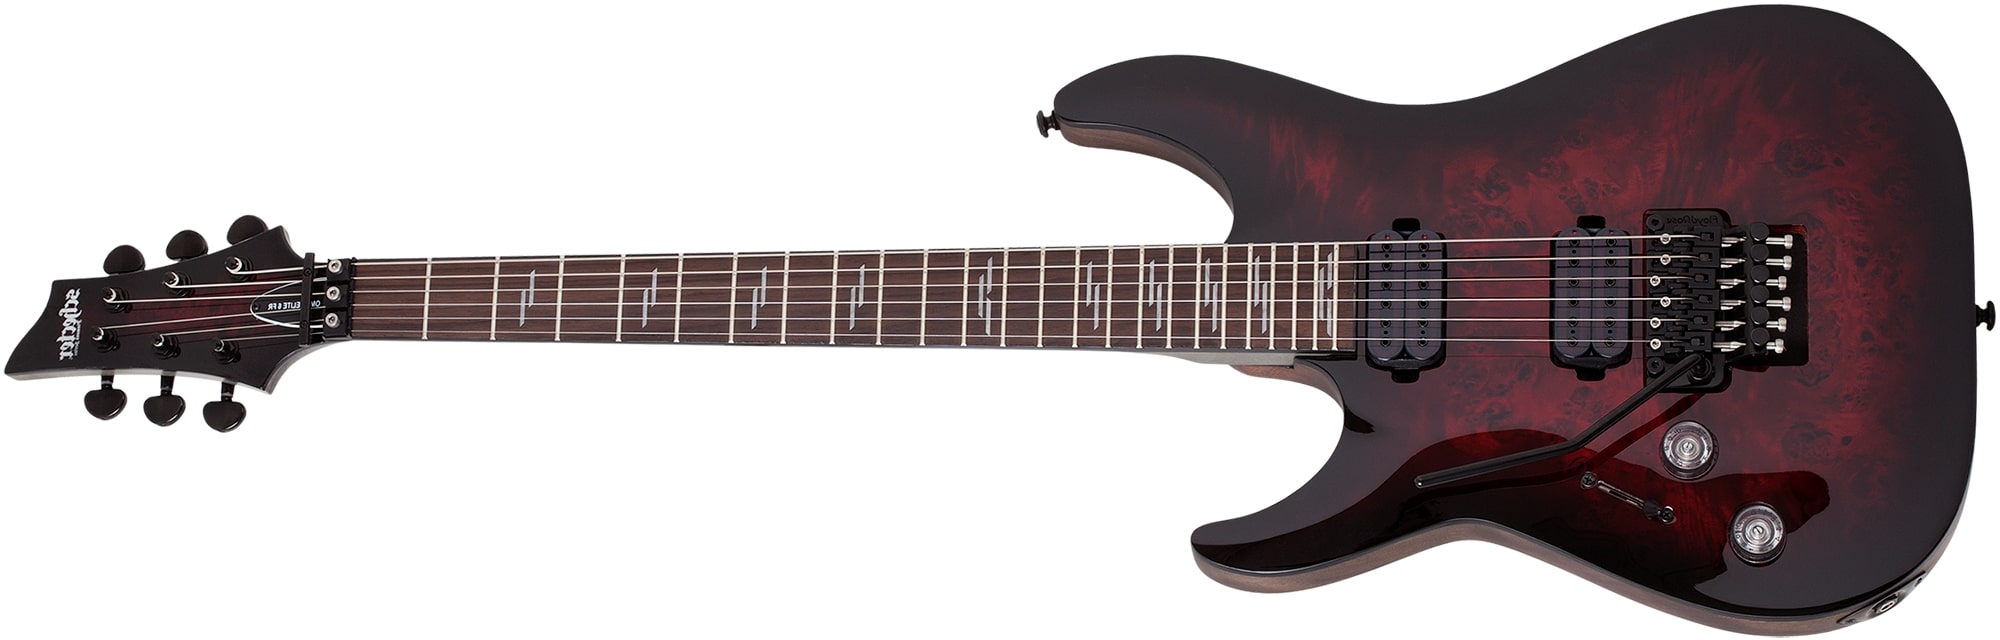 Schecter Omen Elite-6 Left Handed Floyd Rose Electric Guitar Black Cherry Burst 2460-SHC